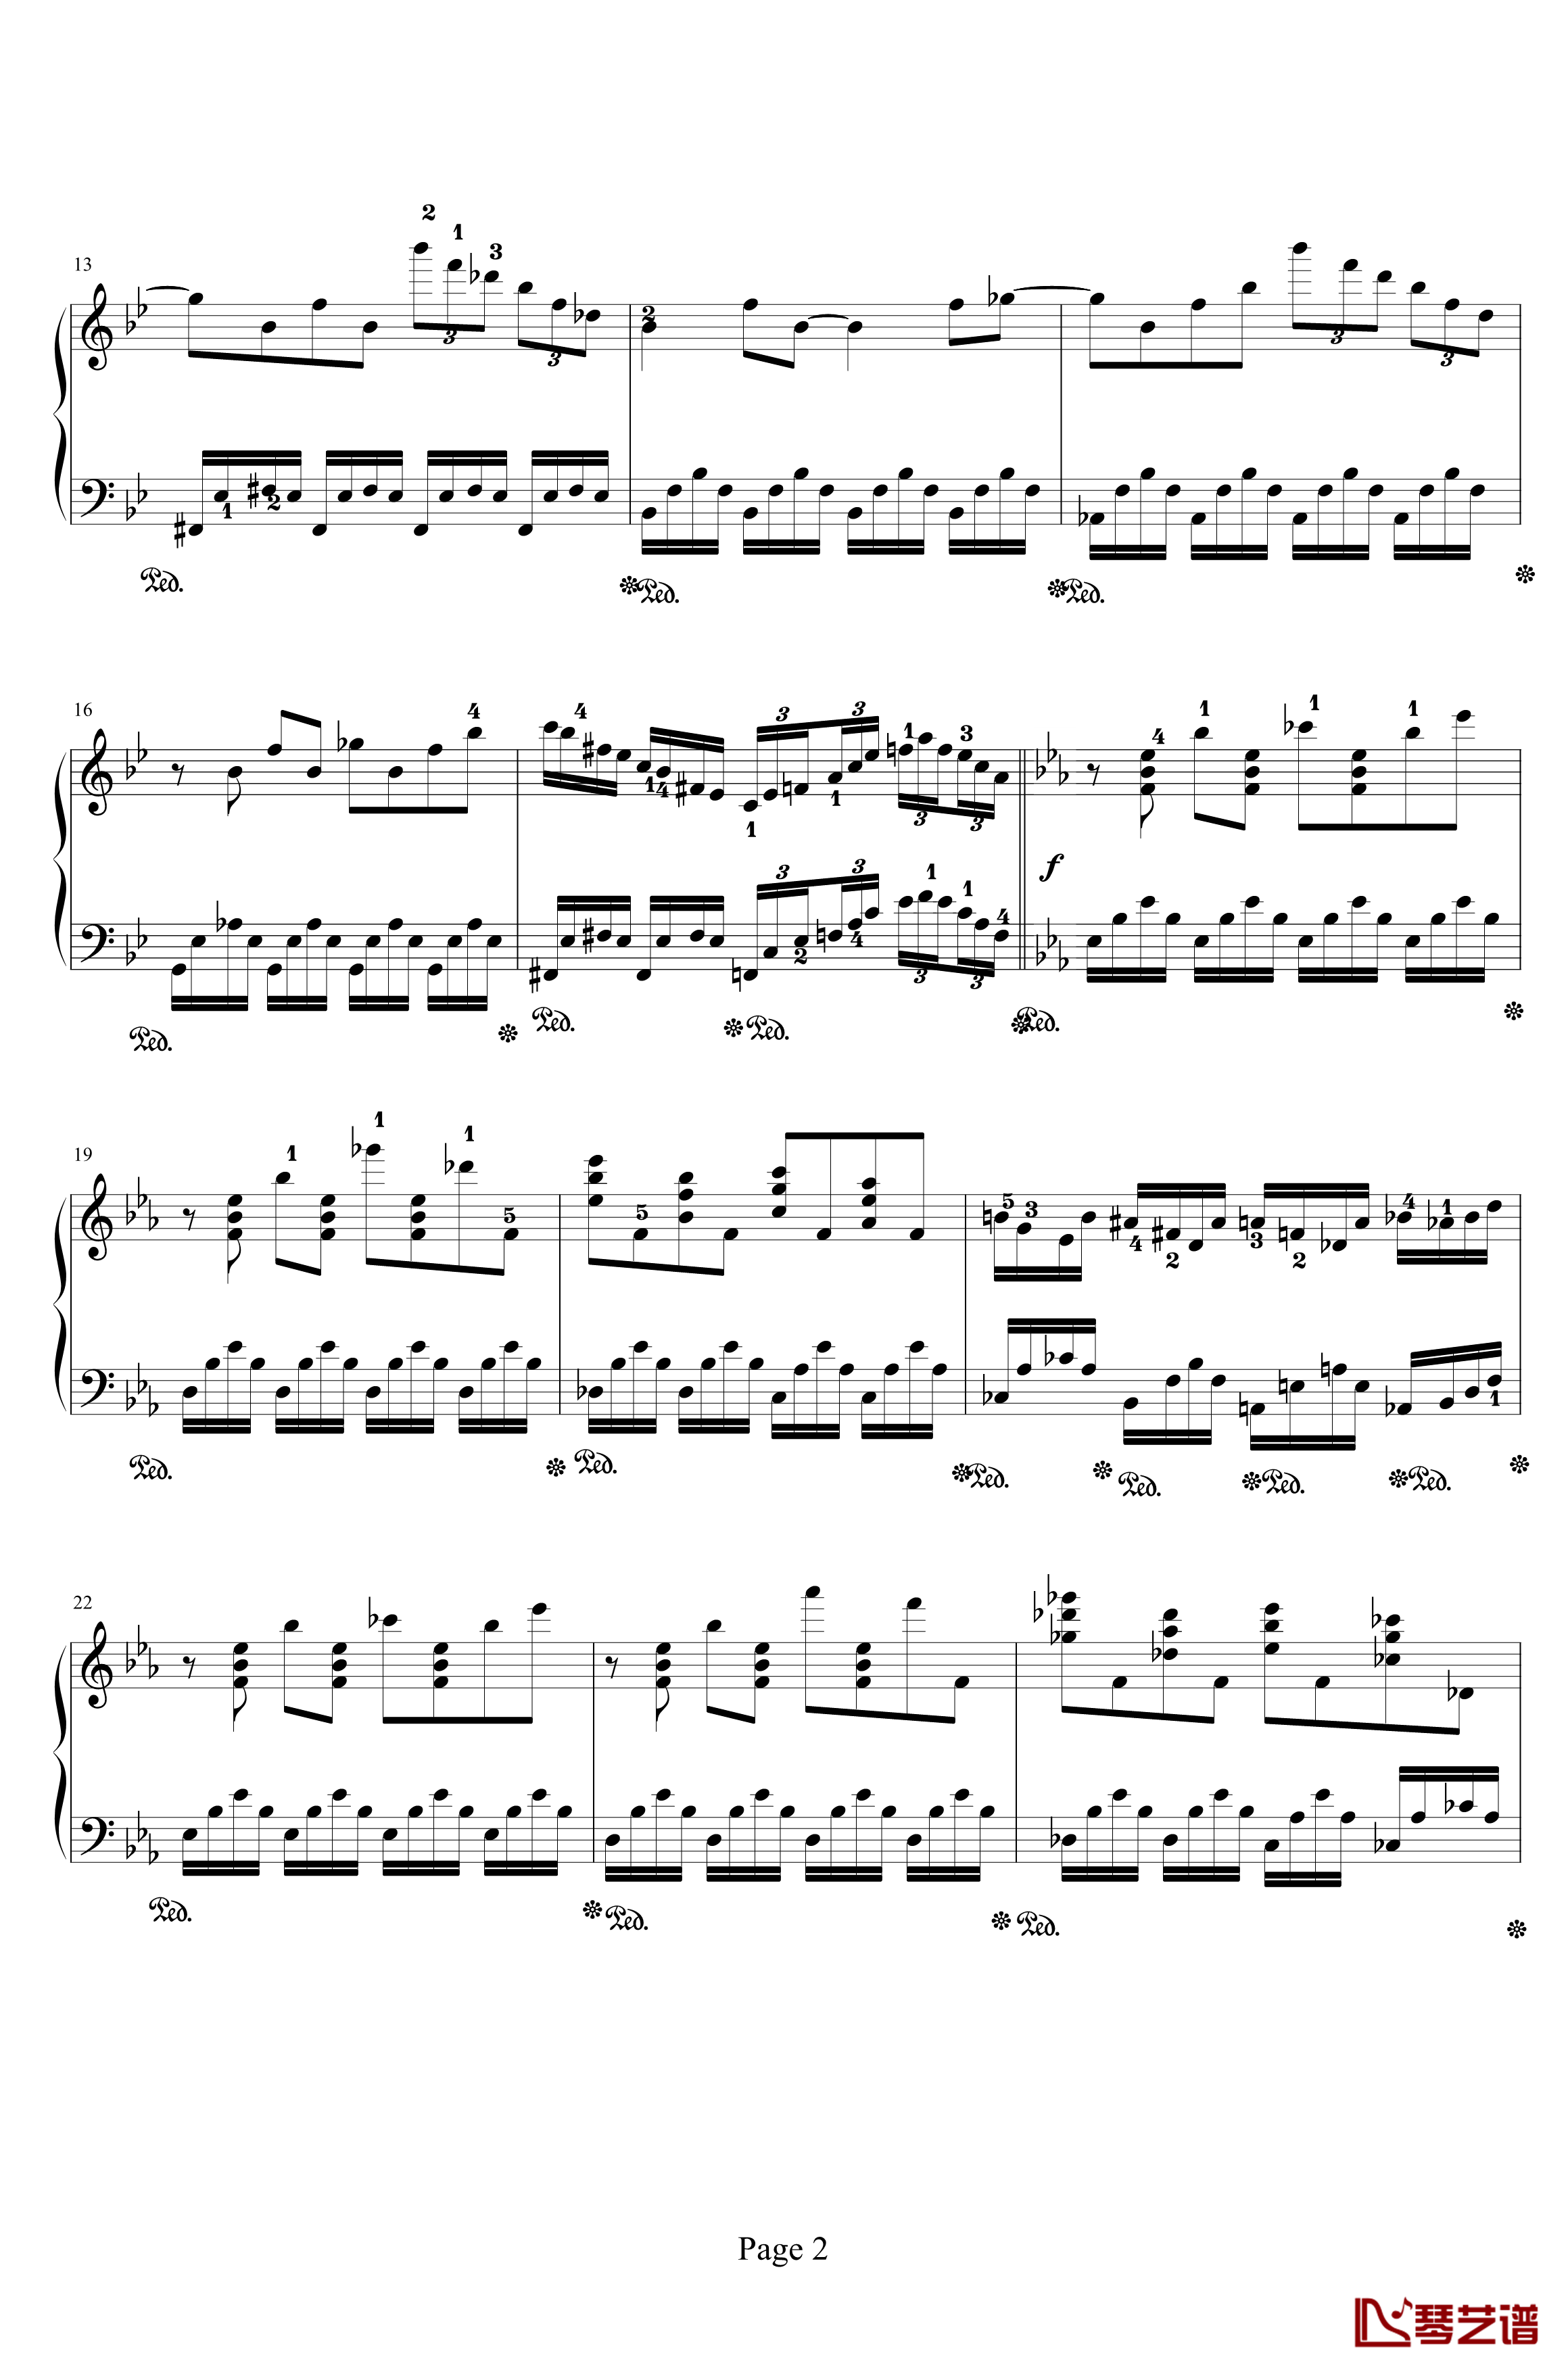 时空幻想练习曲钢琴谱-Ⅰ-晨曦阿西2